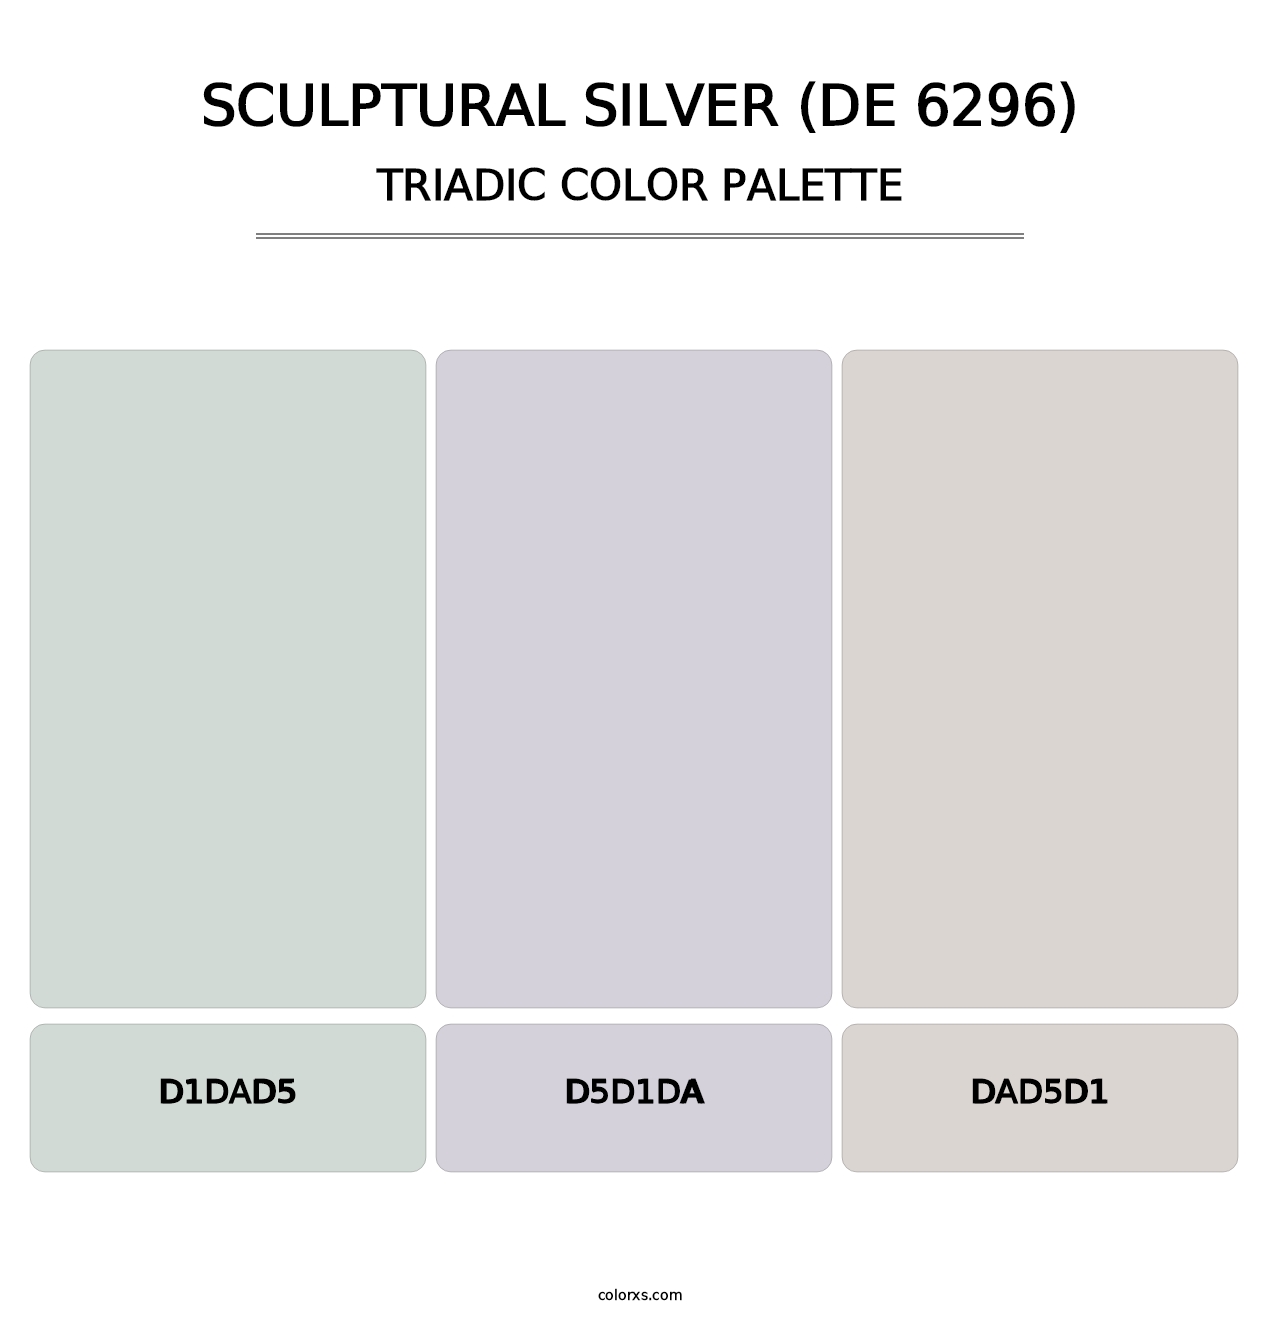 Sculptural Silver (DE 6296) - Triadic Color Palette